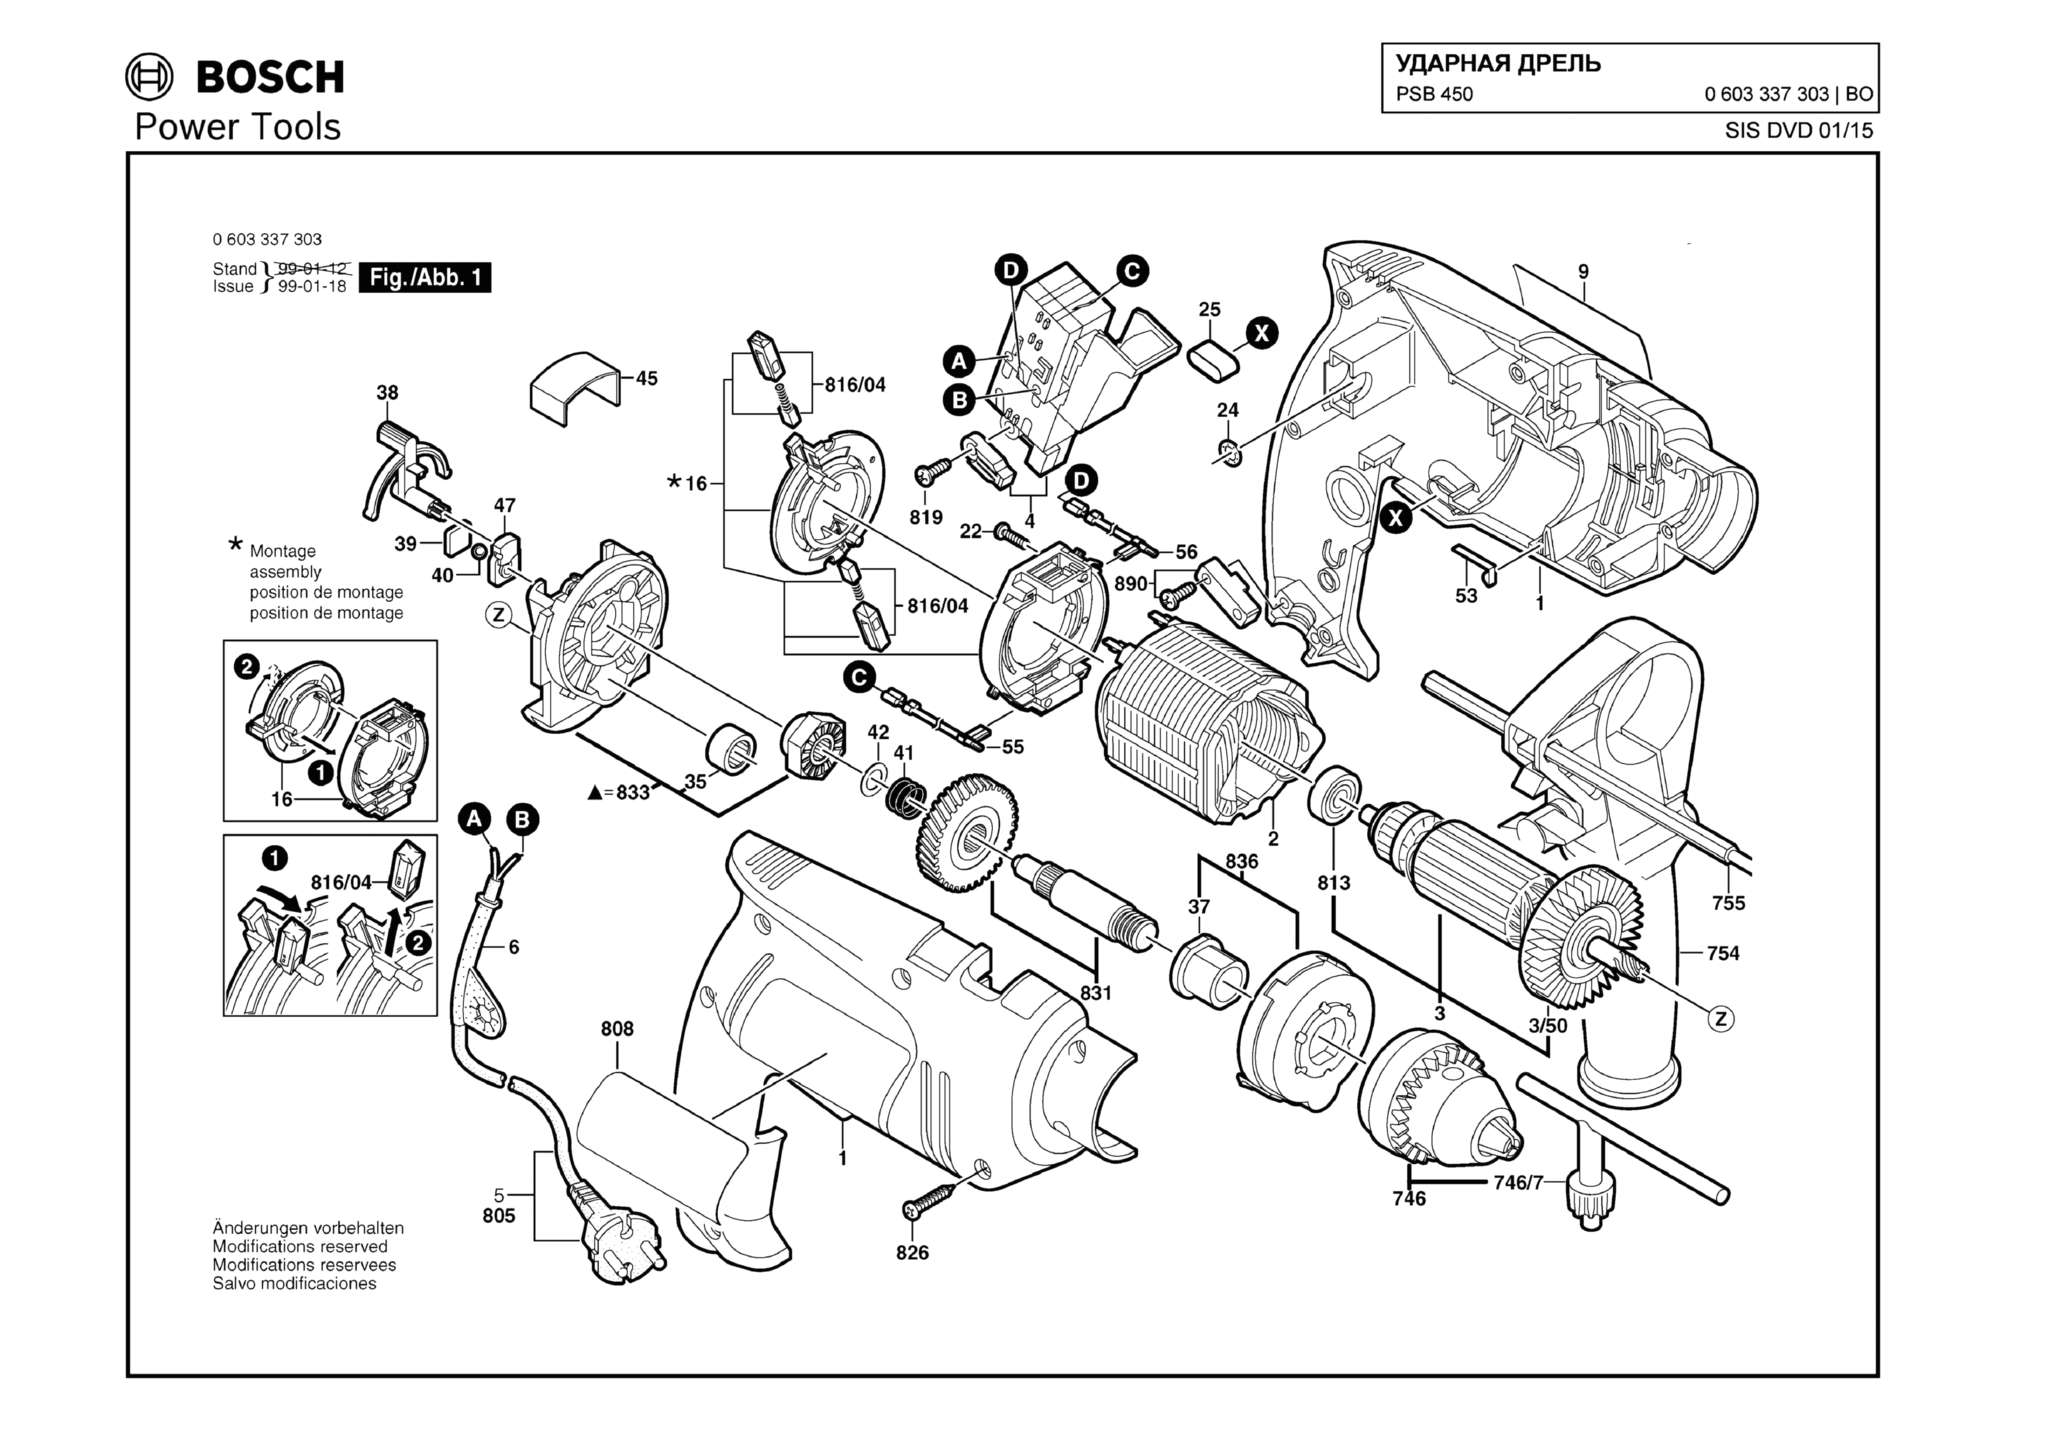 Запчасти, схема и деталировка Bosch PSB 450 (ТИП 0603337303)